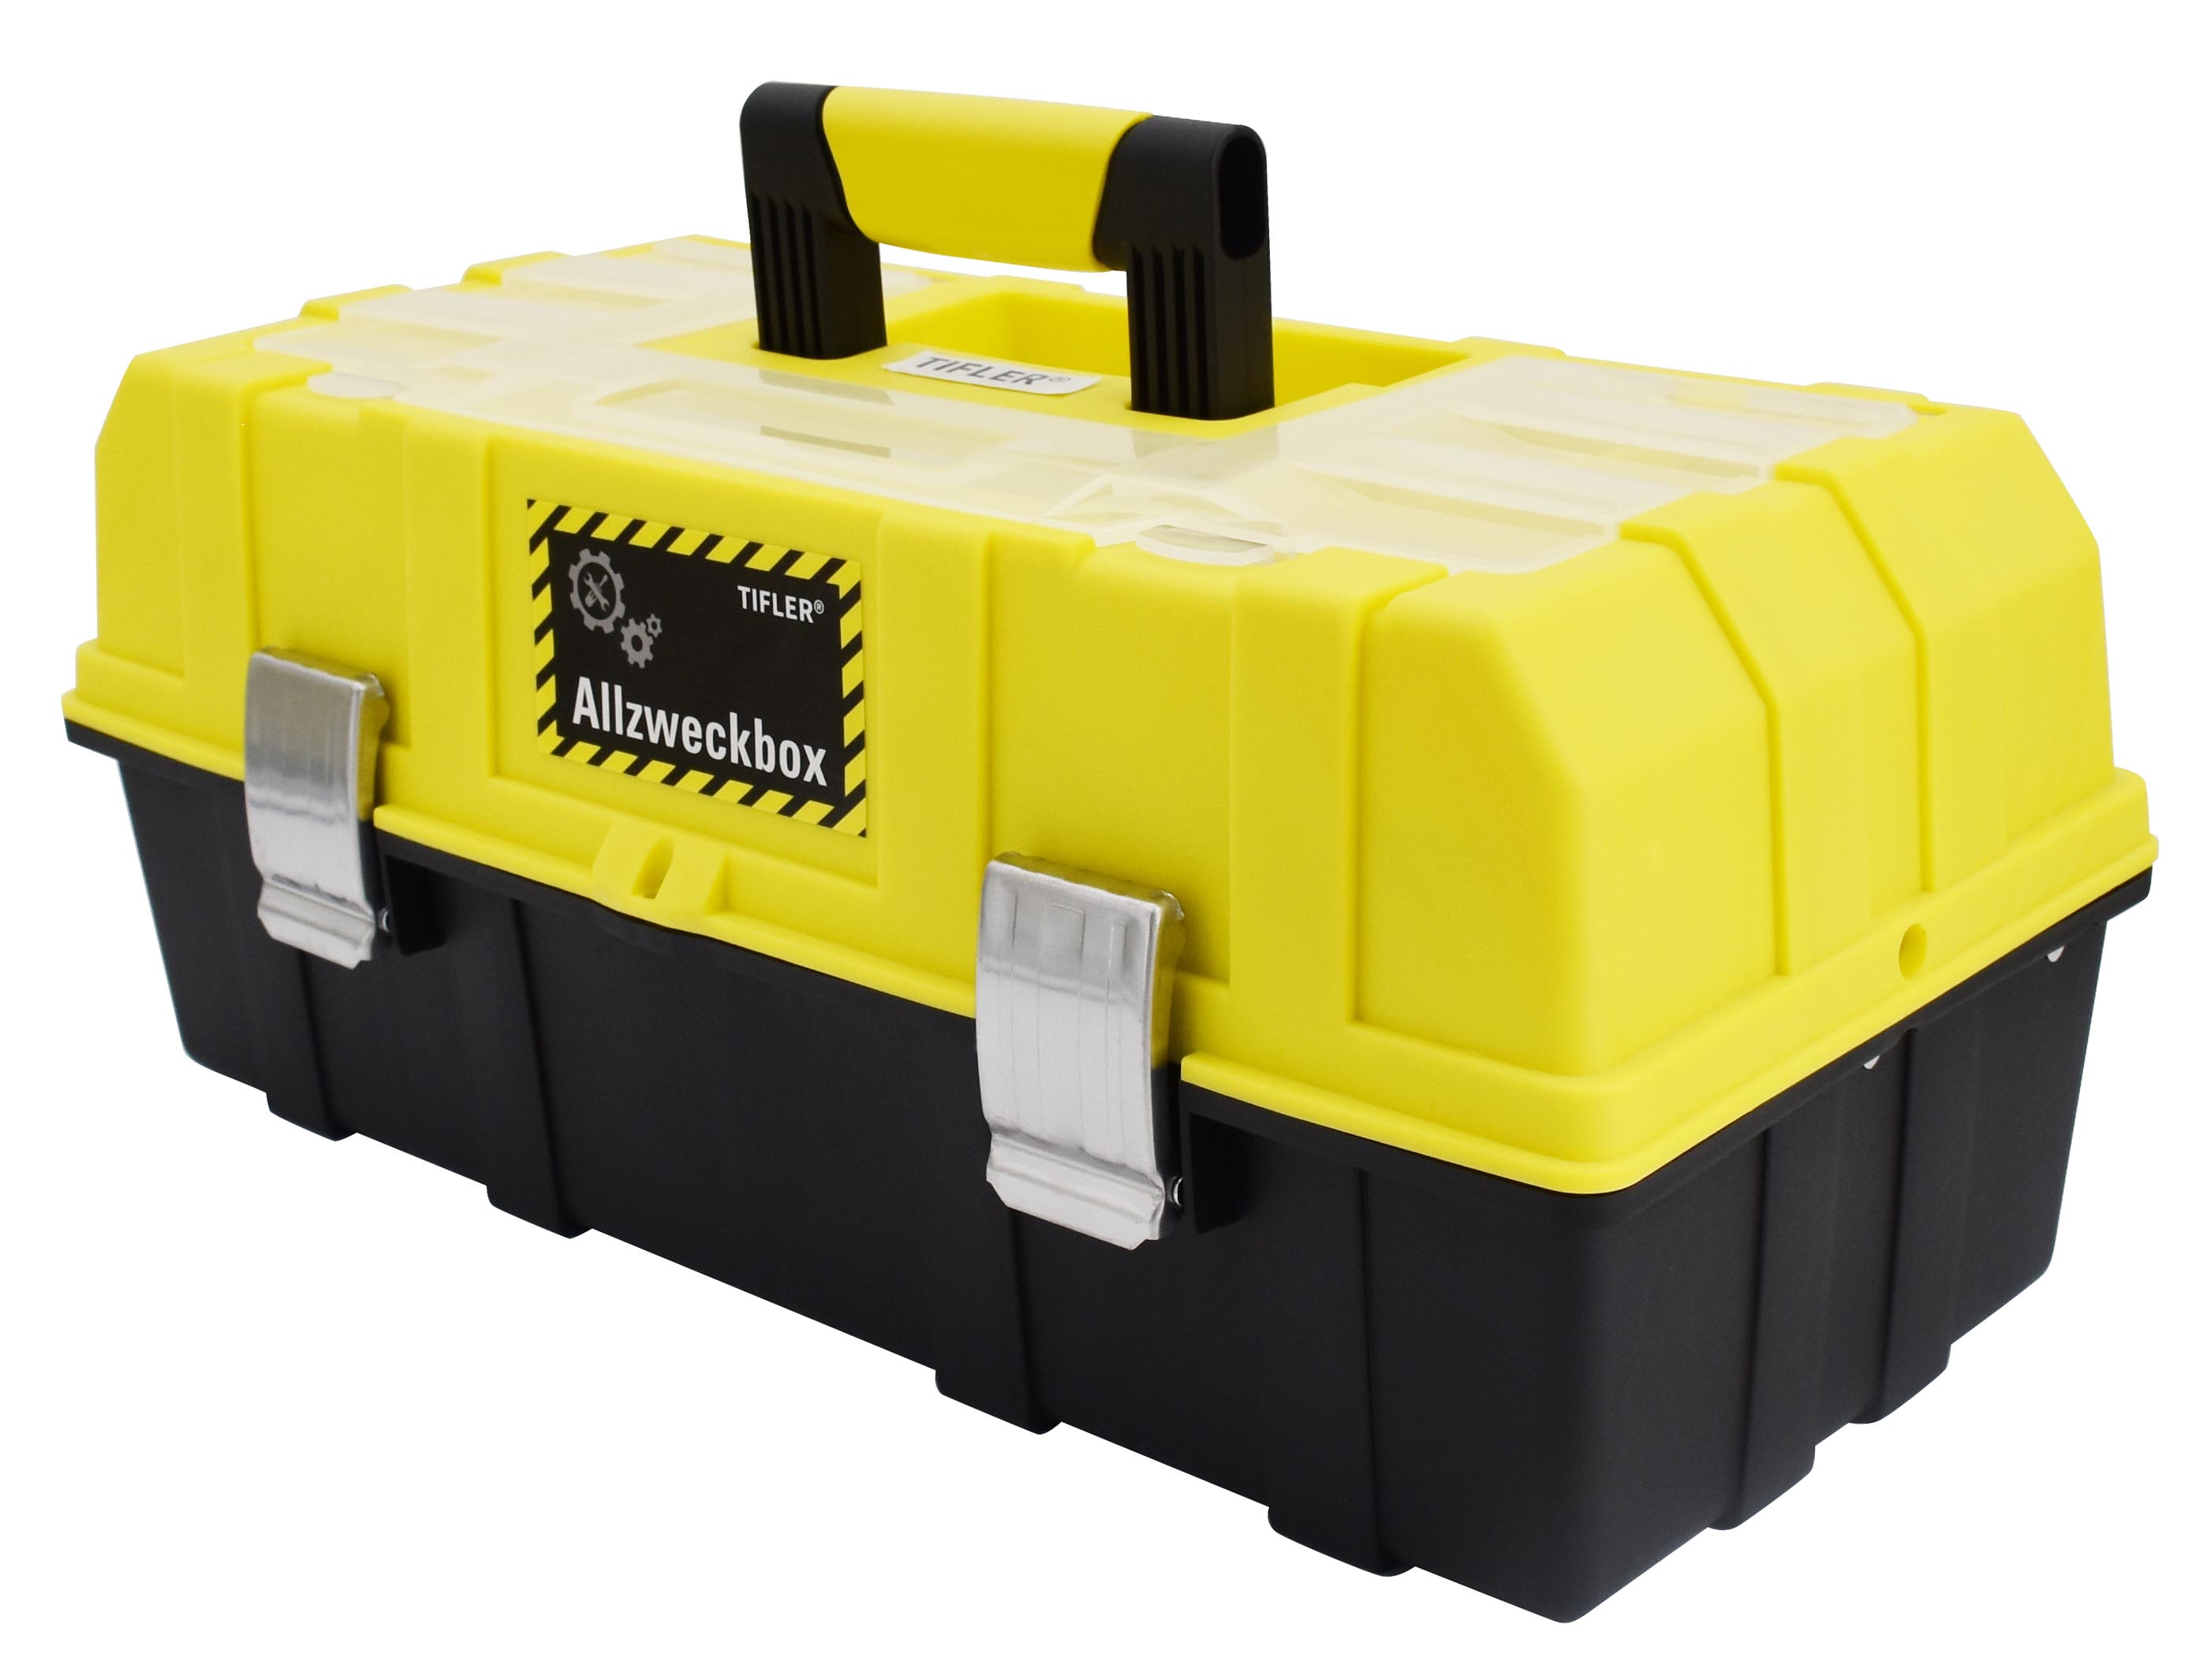 Die Tifler Allzweckbox eignet sich insbesondere für leichtes Werkzeug wie die Anglerausrüstung.